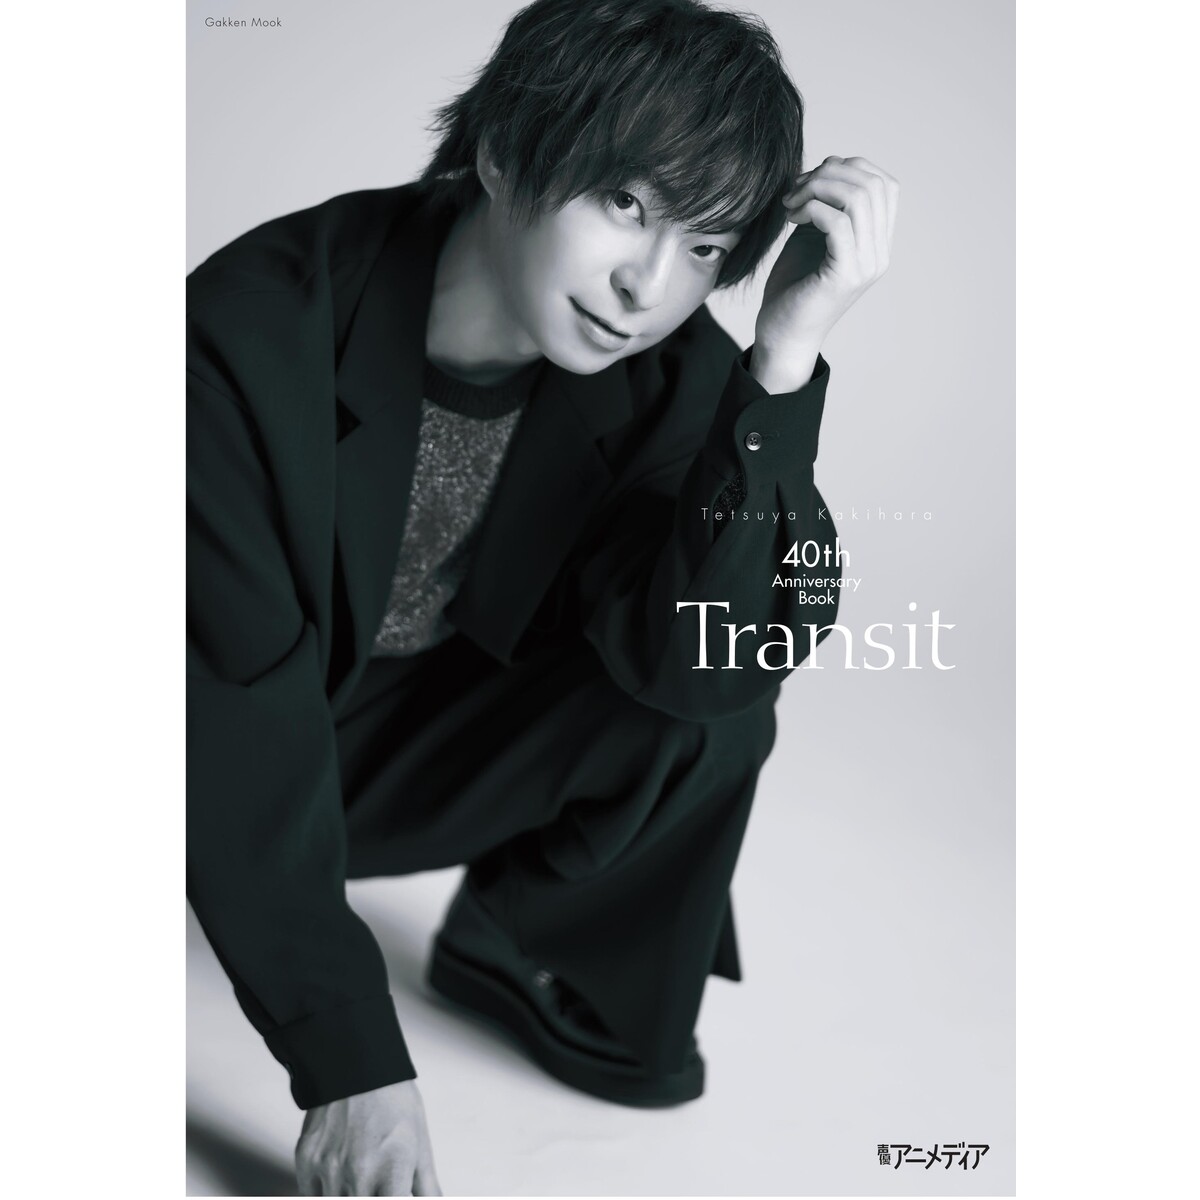 柿原徹也40th Anniversary Book『Transit』【セブンネット限定特典 